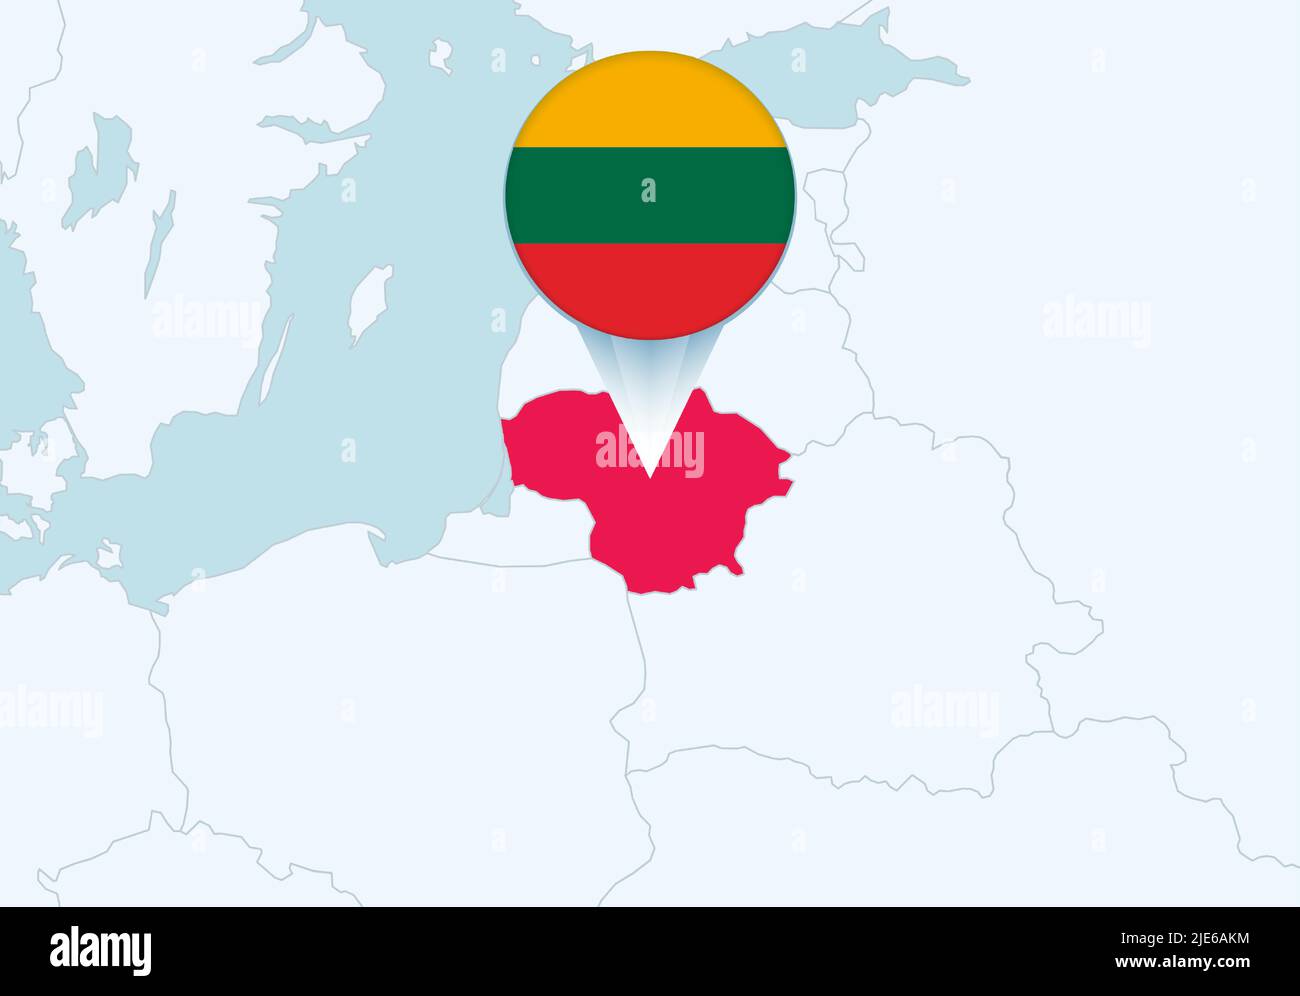 Europa con una mappa selezionata della Lituania e l'icona della bandiera della Lituania. Mappa vettoriale e flag. Illustrazione Vettoriale